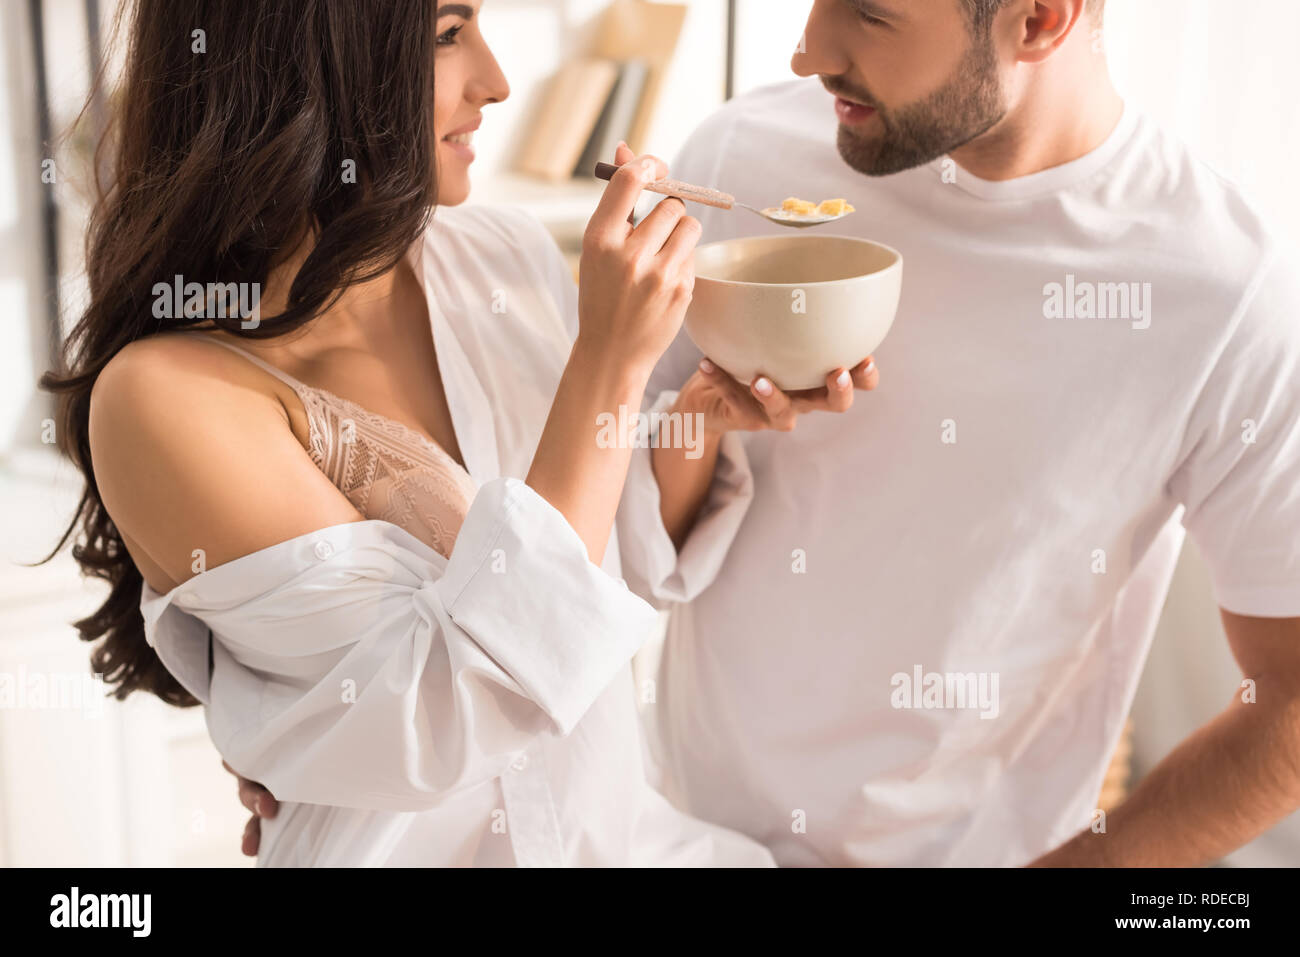 Frau füttern Mann mit Müsli beim Frühstück am Morgen Stockfoto